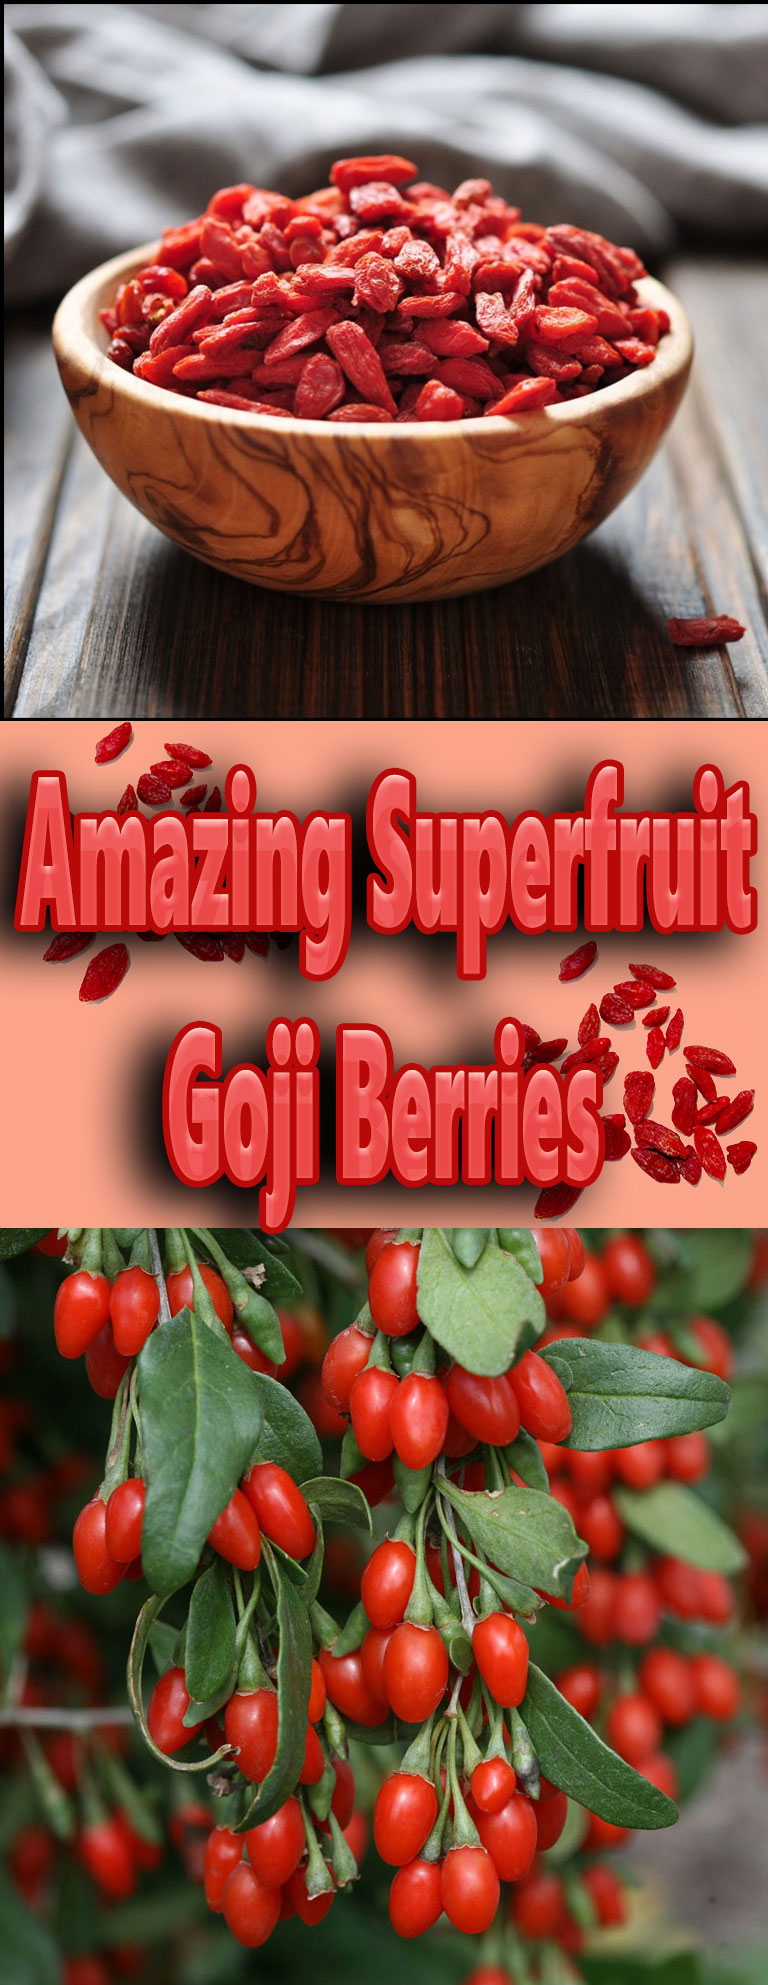 Amazing Superfruit - Goji Berries